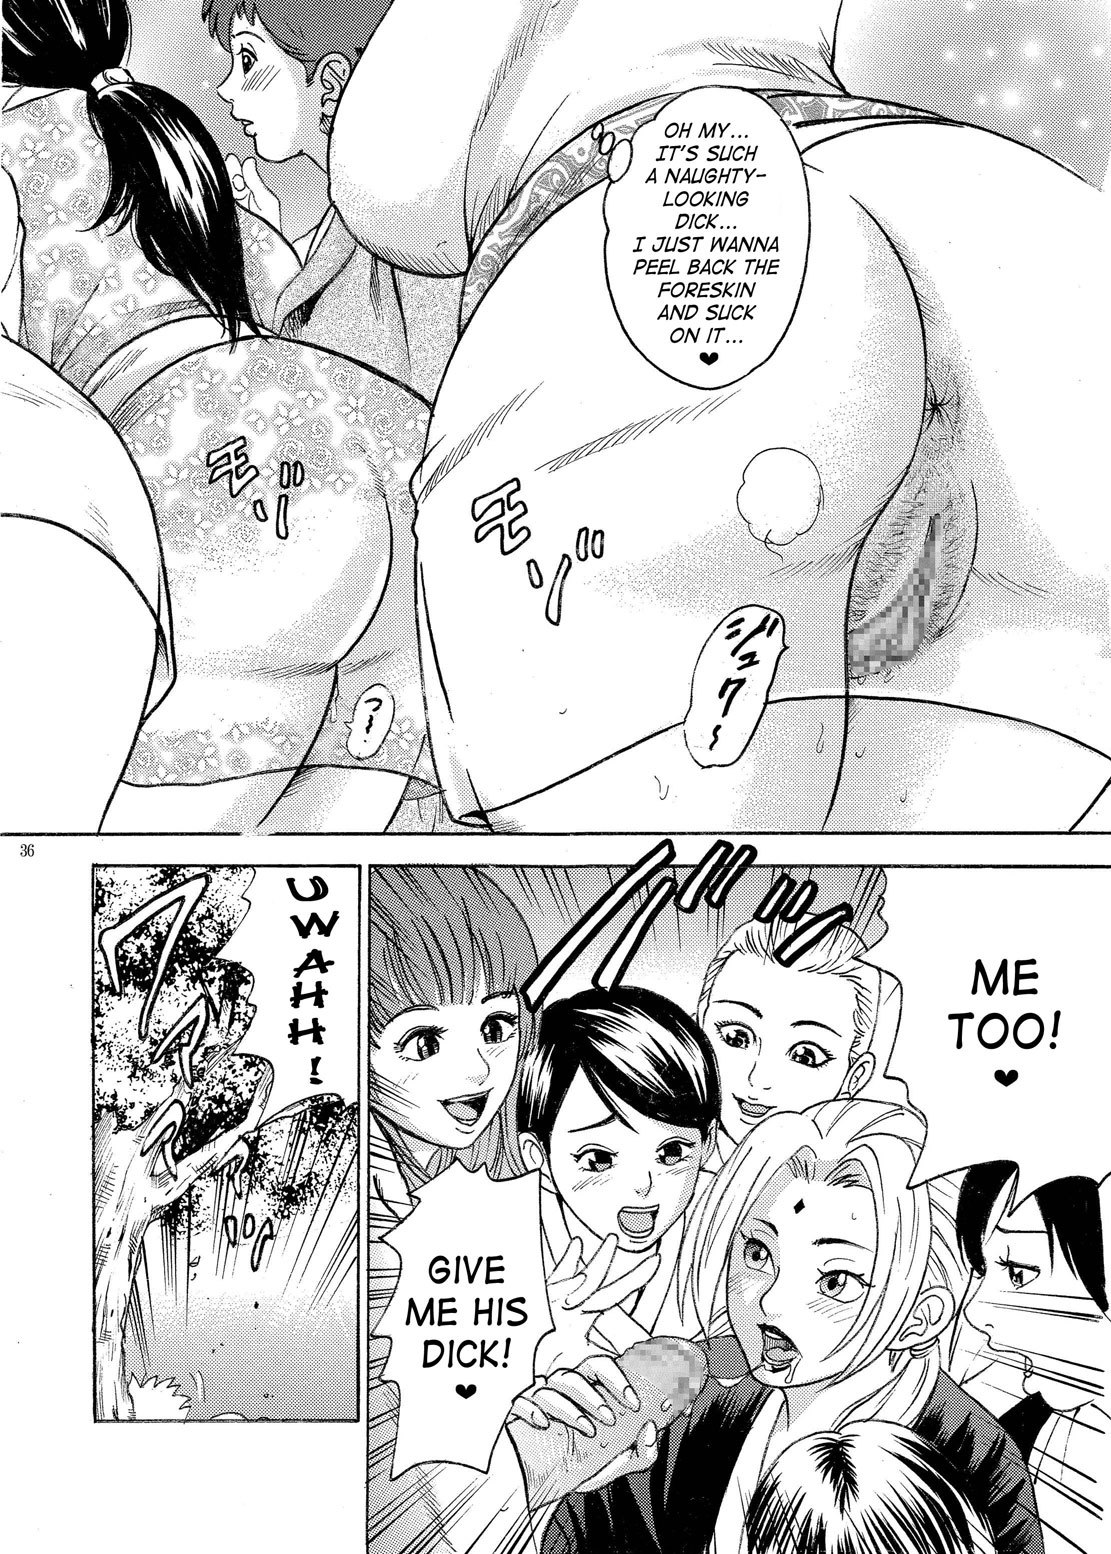 PM 9 - Indecent Ninja Exam naruto 32 hentai manga